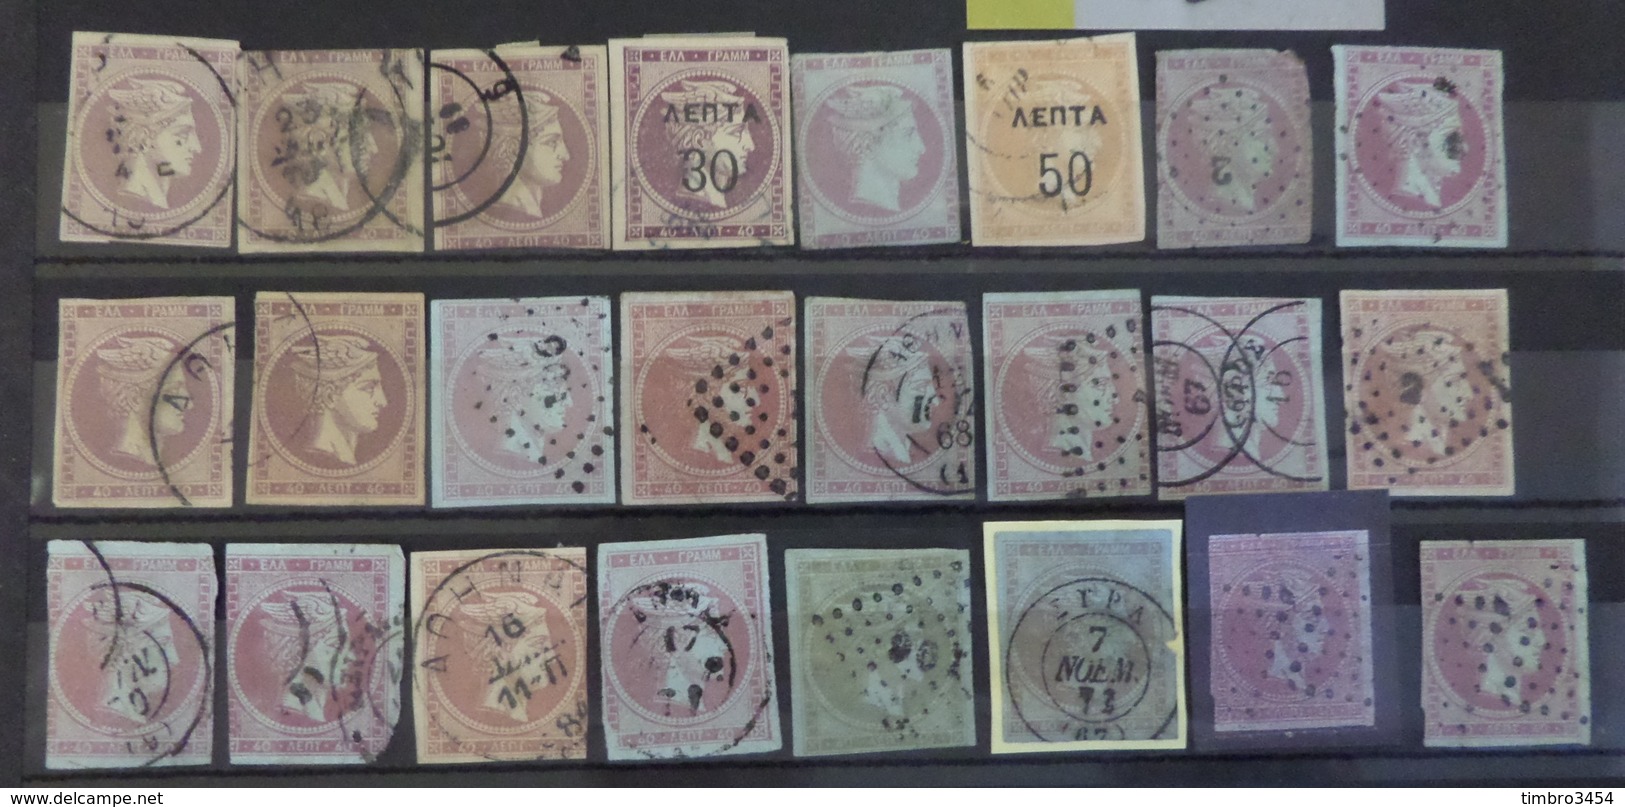 Grèce superbe collection de 1680 timbres classiques types Hermes neufs et oblitérés. Cote énorme! A saisir!